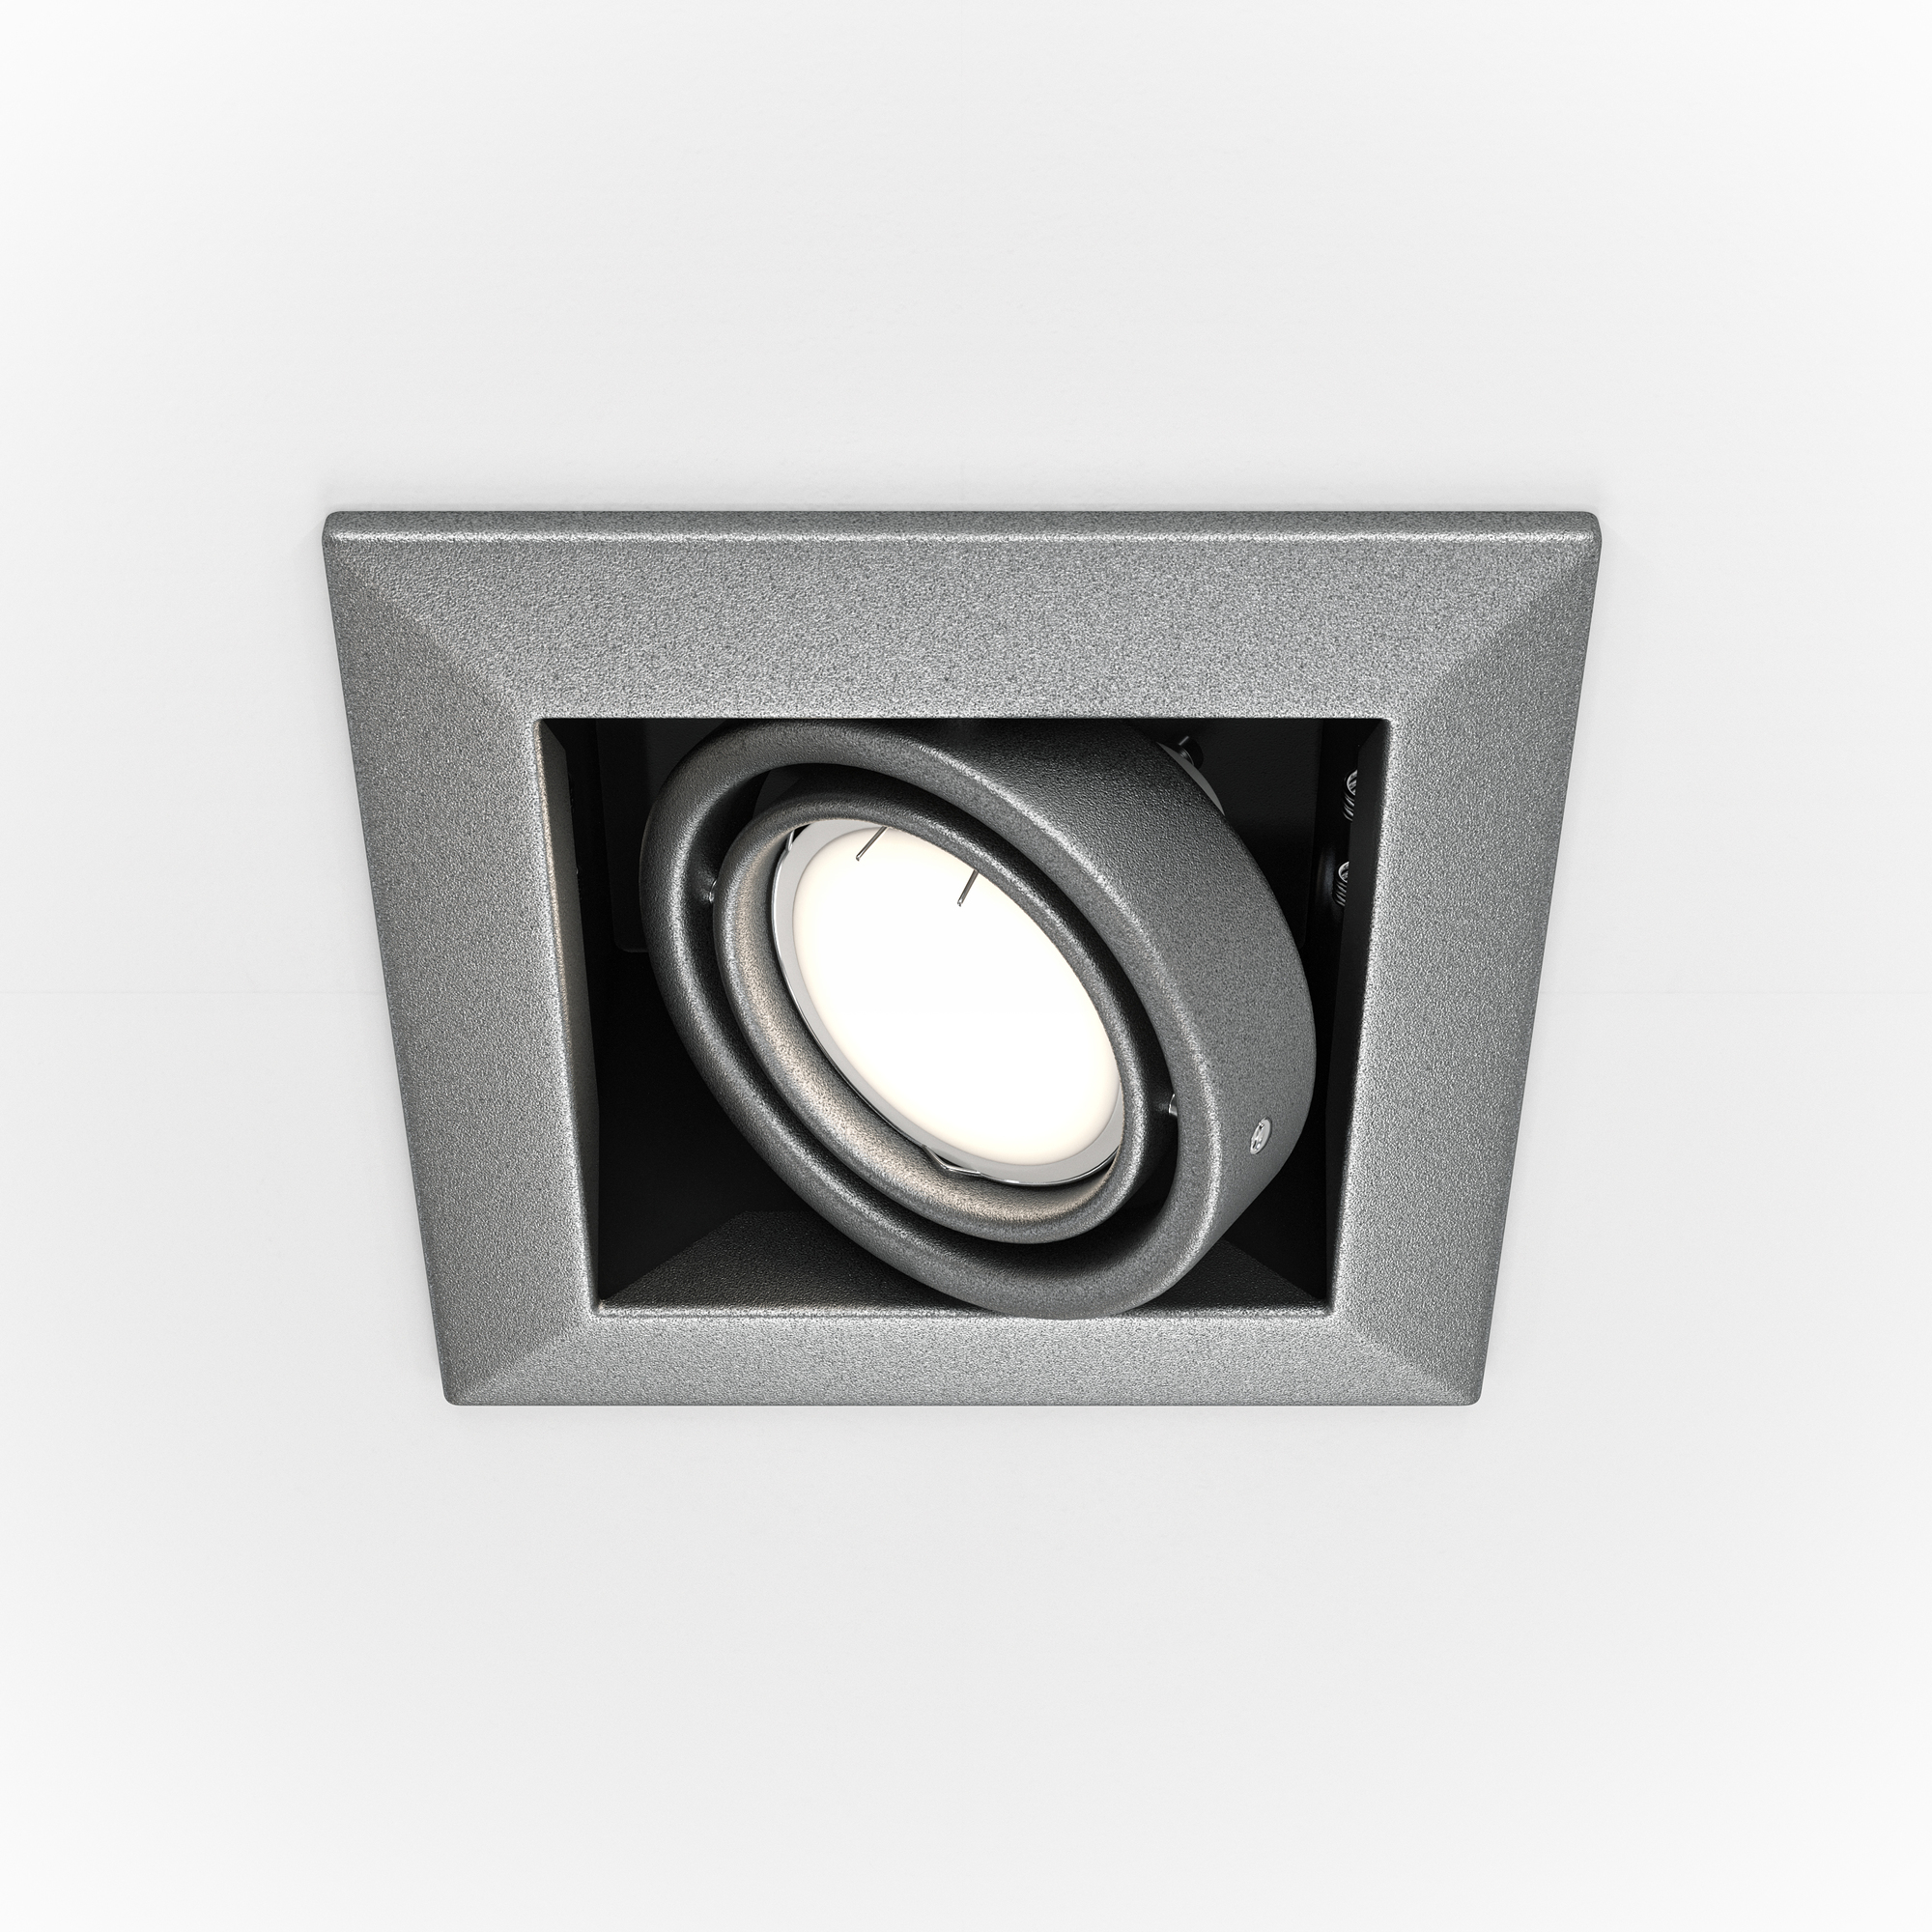 Встраиваемый светильник Technical DL008-2-01-S